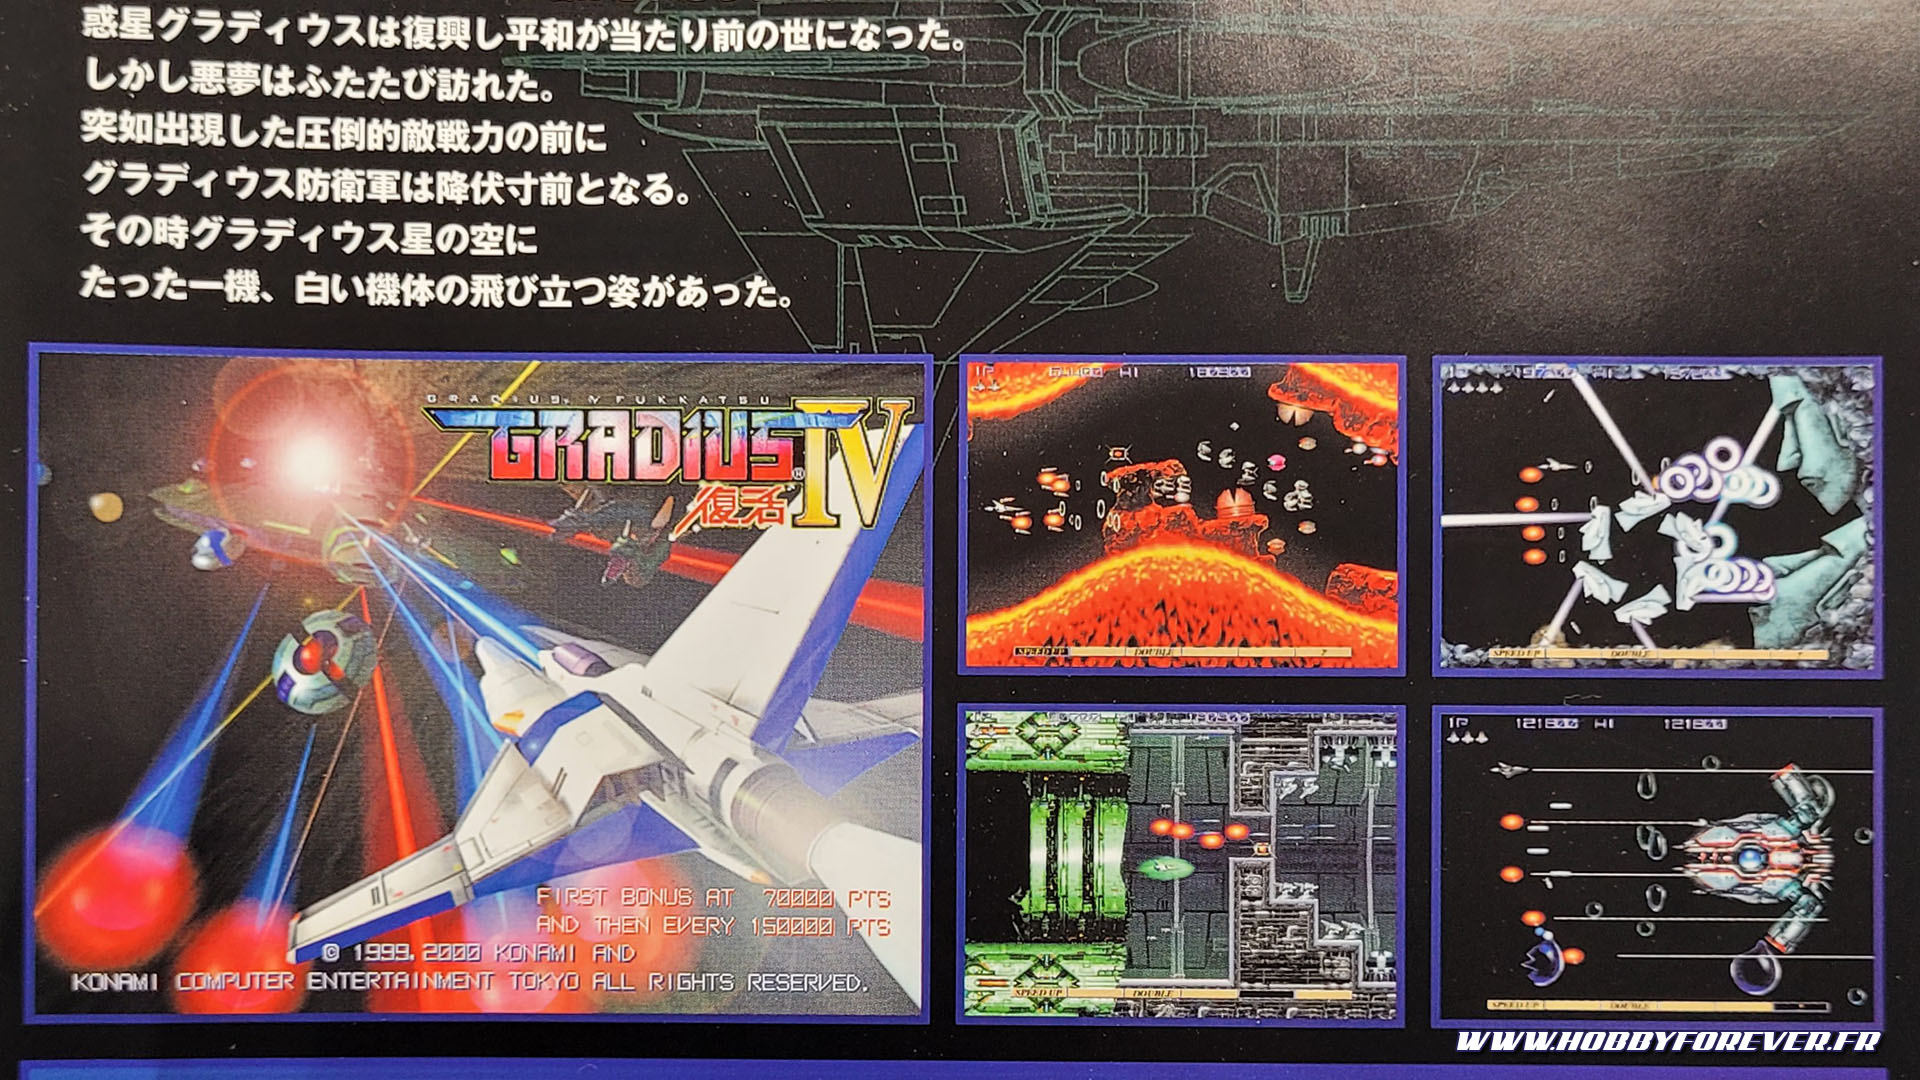 La notice nous présente le jeu dont est tiré ce Vic Viper : Graius IV de Konami